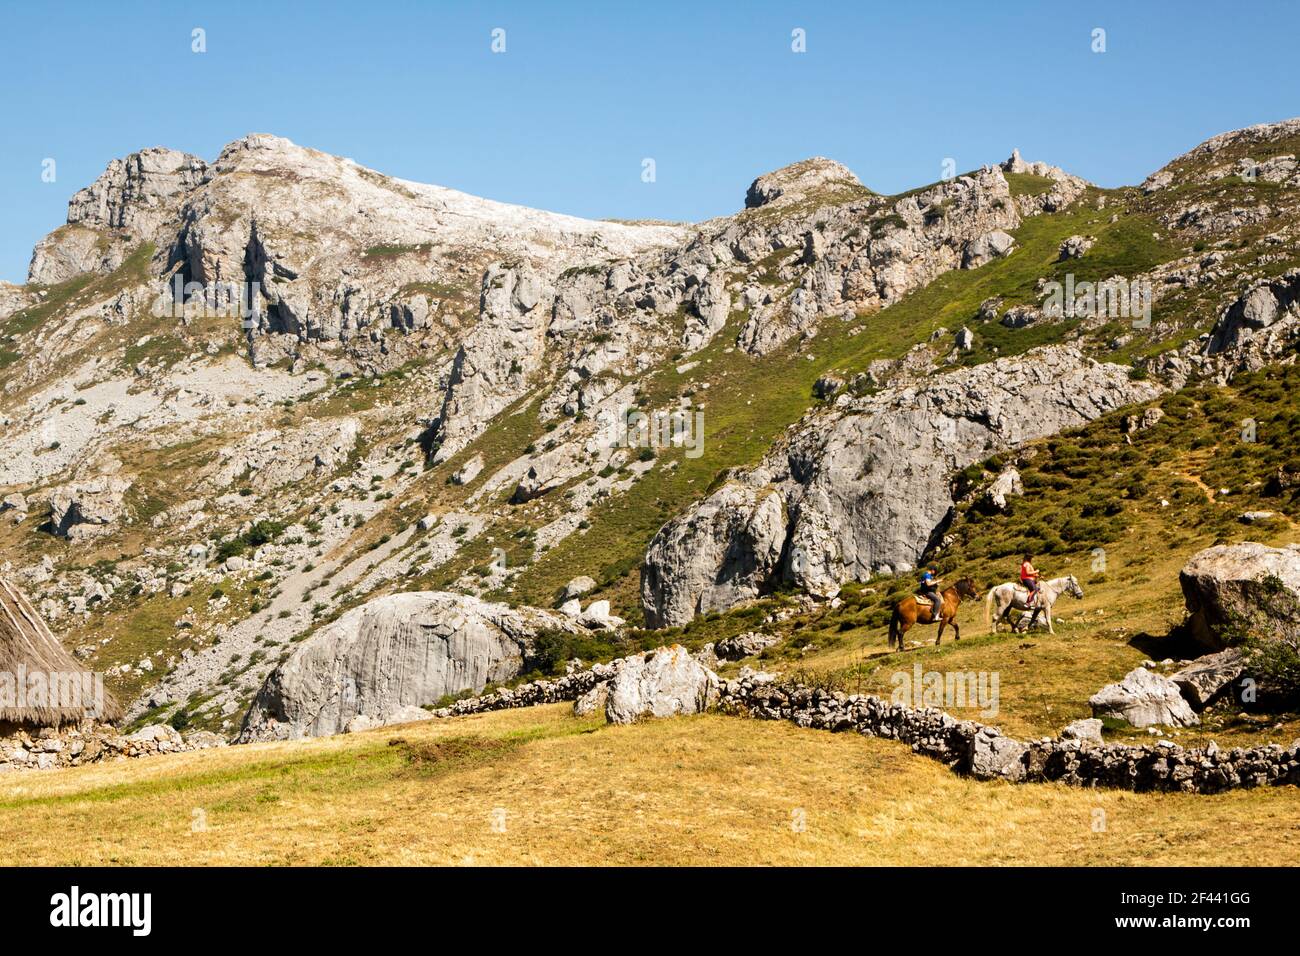 Parc naturel de Somiedo dans les montagnes des Asturies, Espagne Banque D'Images